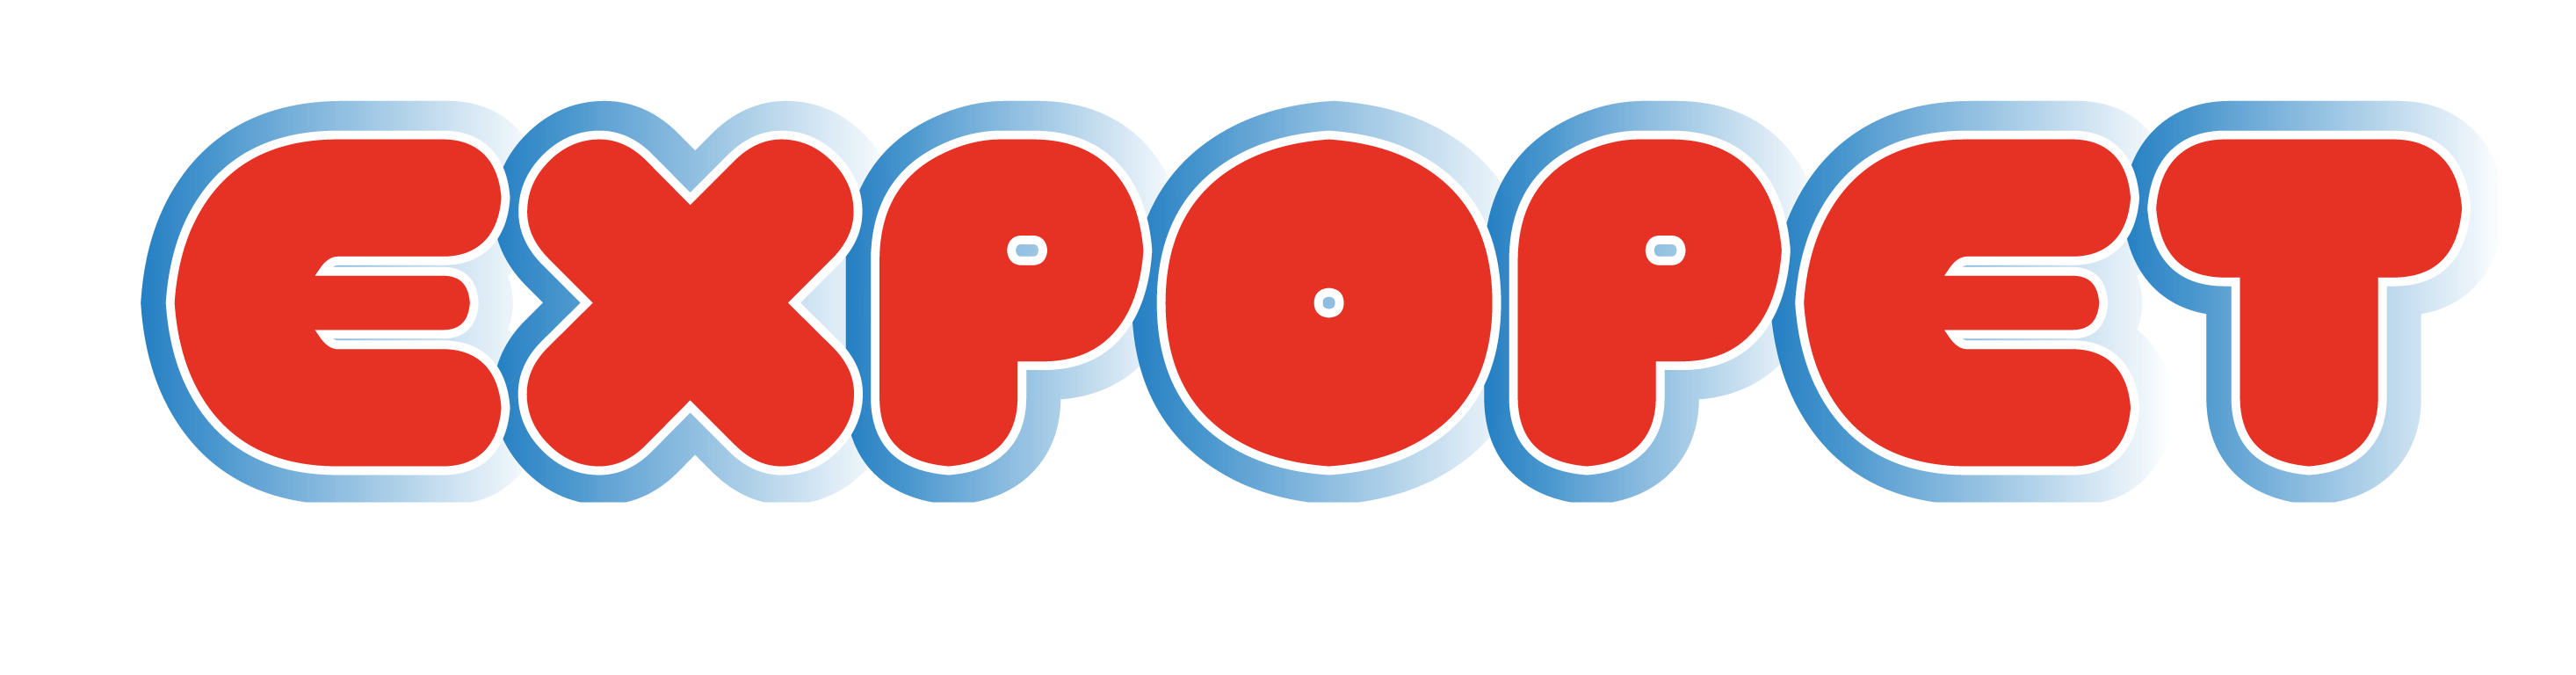 Logo Expopet